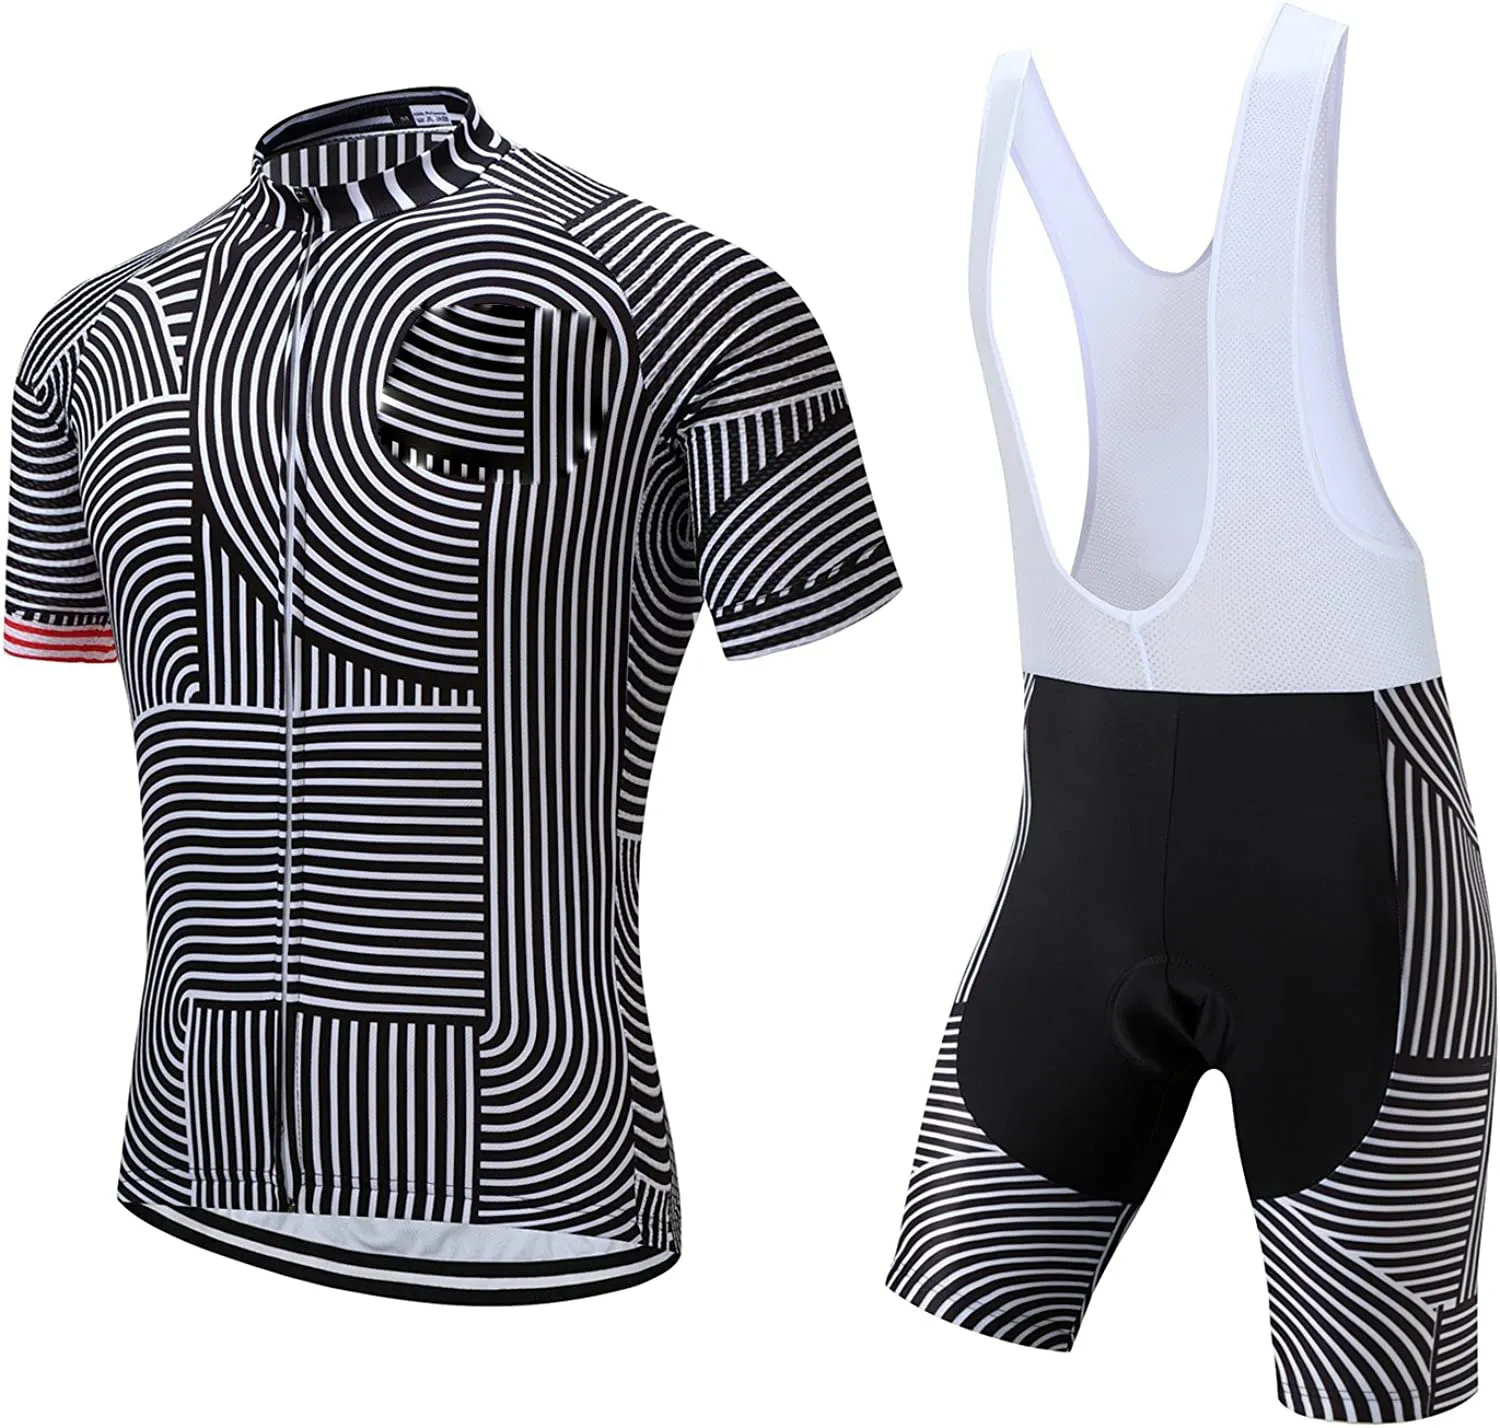 Nuovo Design di alta qualità Quick Dry Custom Cycling Jersey abbigliamento da ciclismo traspirante all'ingrosso